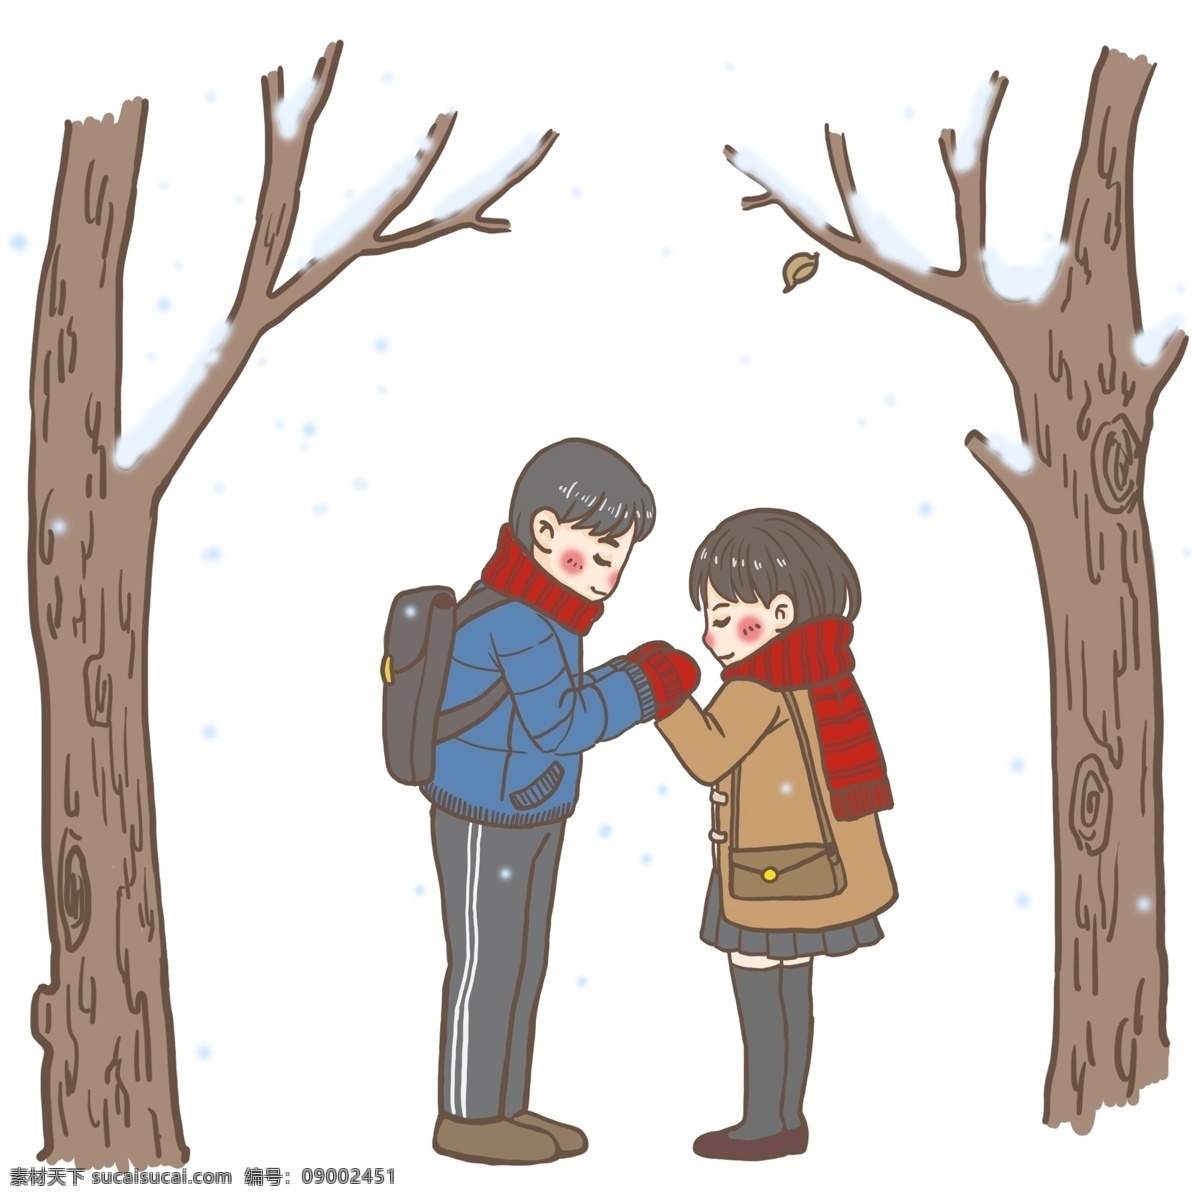 情侣 小雪 二十四节气 冬天 寒冷 天气下小雪 冬季 可爱 积雪 两棵树 情侣和小雪 握手 温暖 小裙子